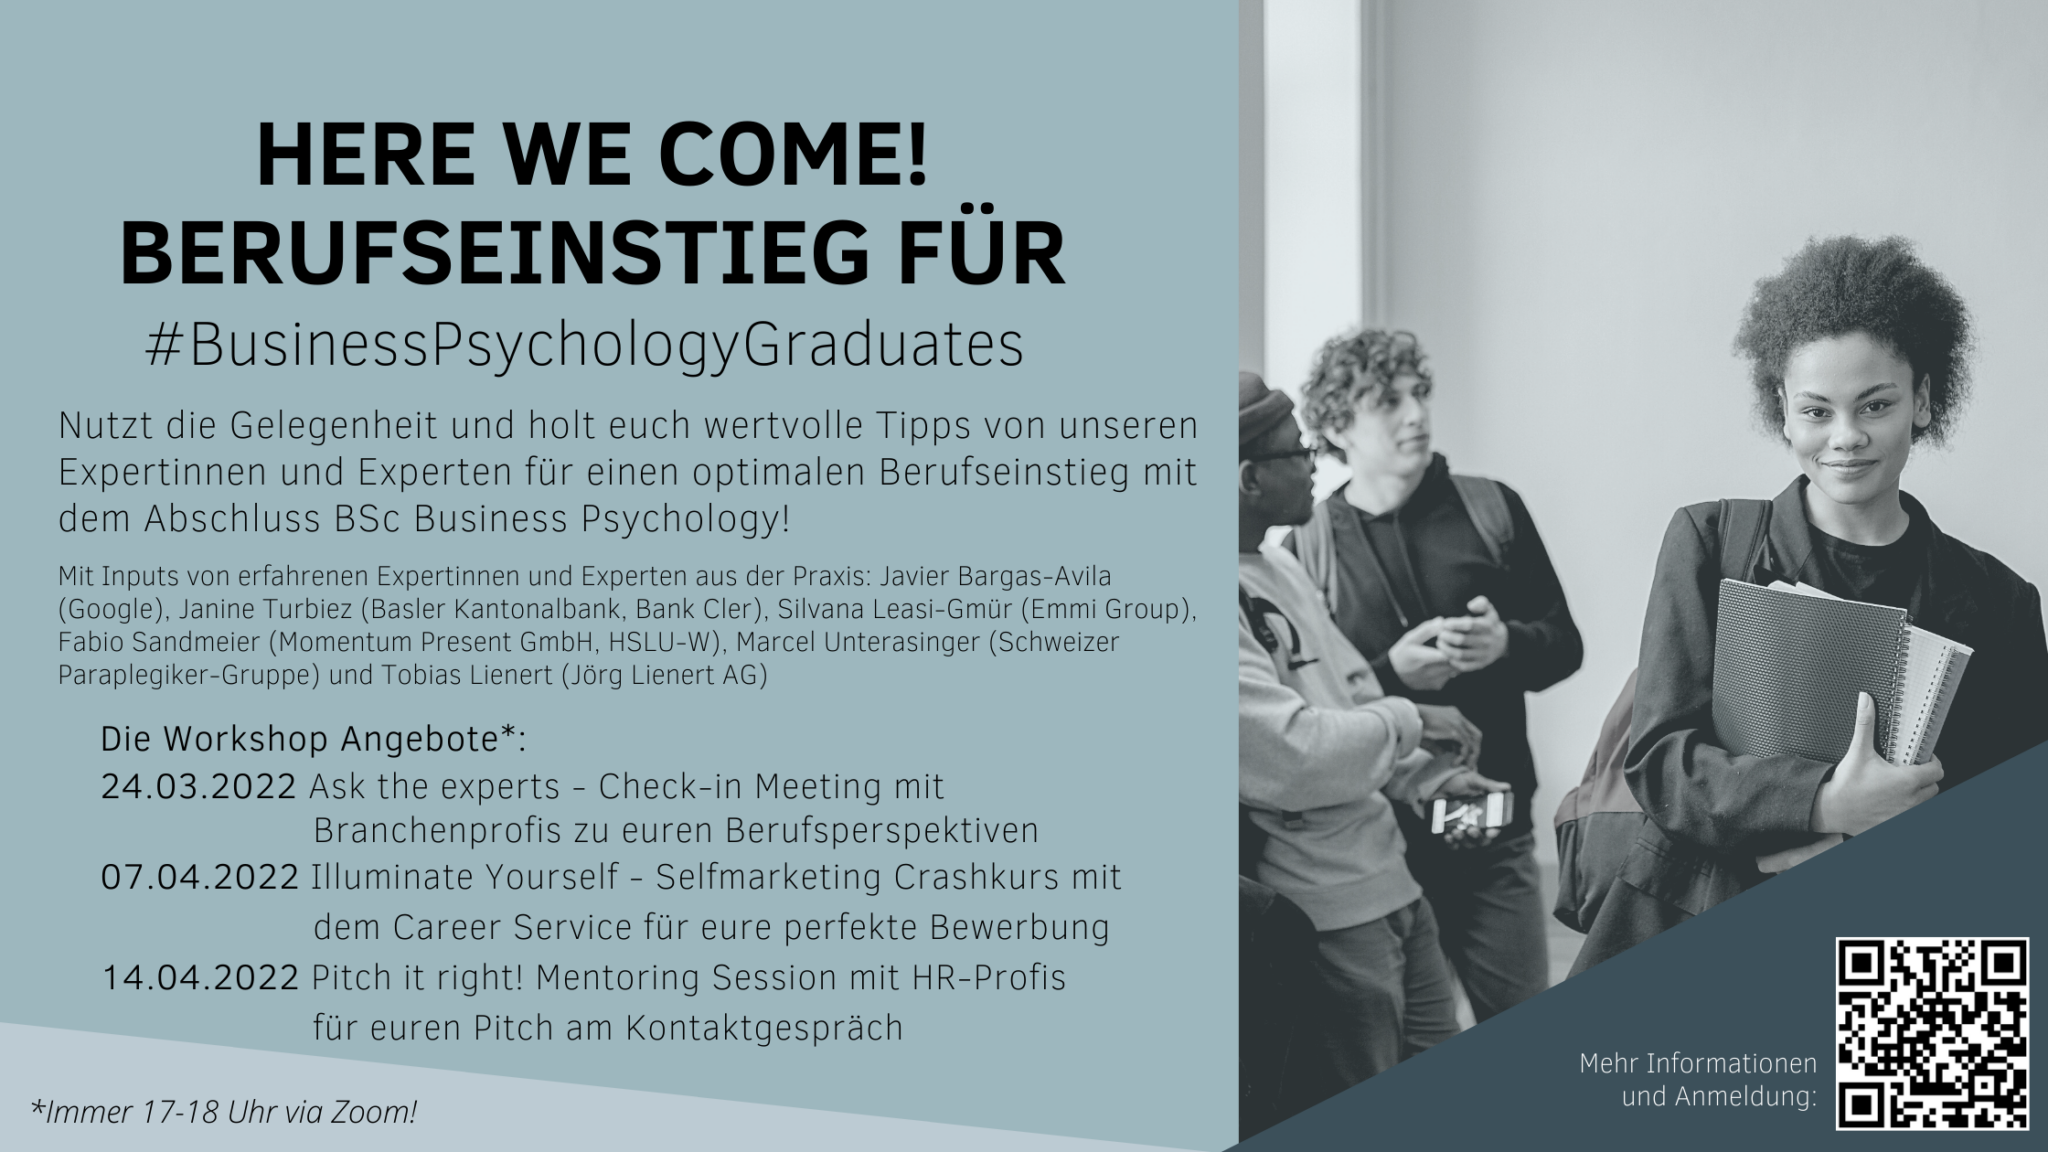 Here we come! Berufseinstieg für #BusinessPsychologyGraduates – Workshopangebote